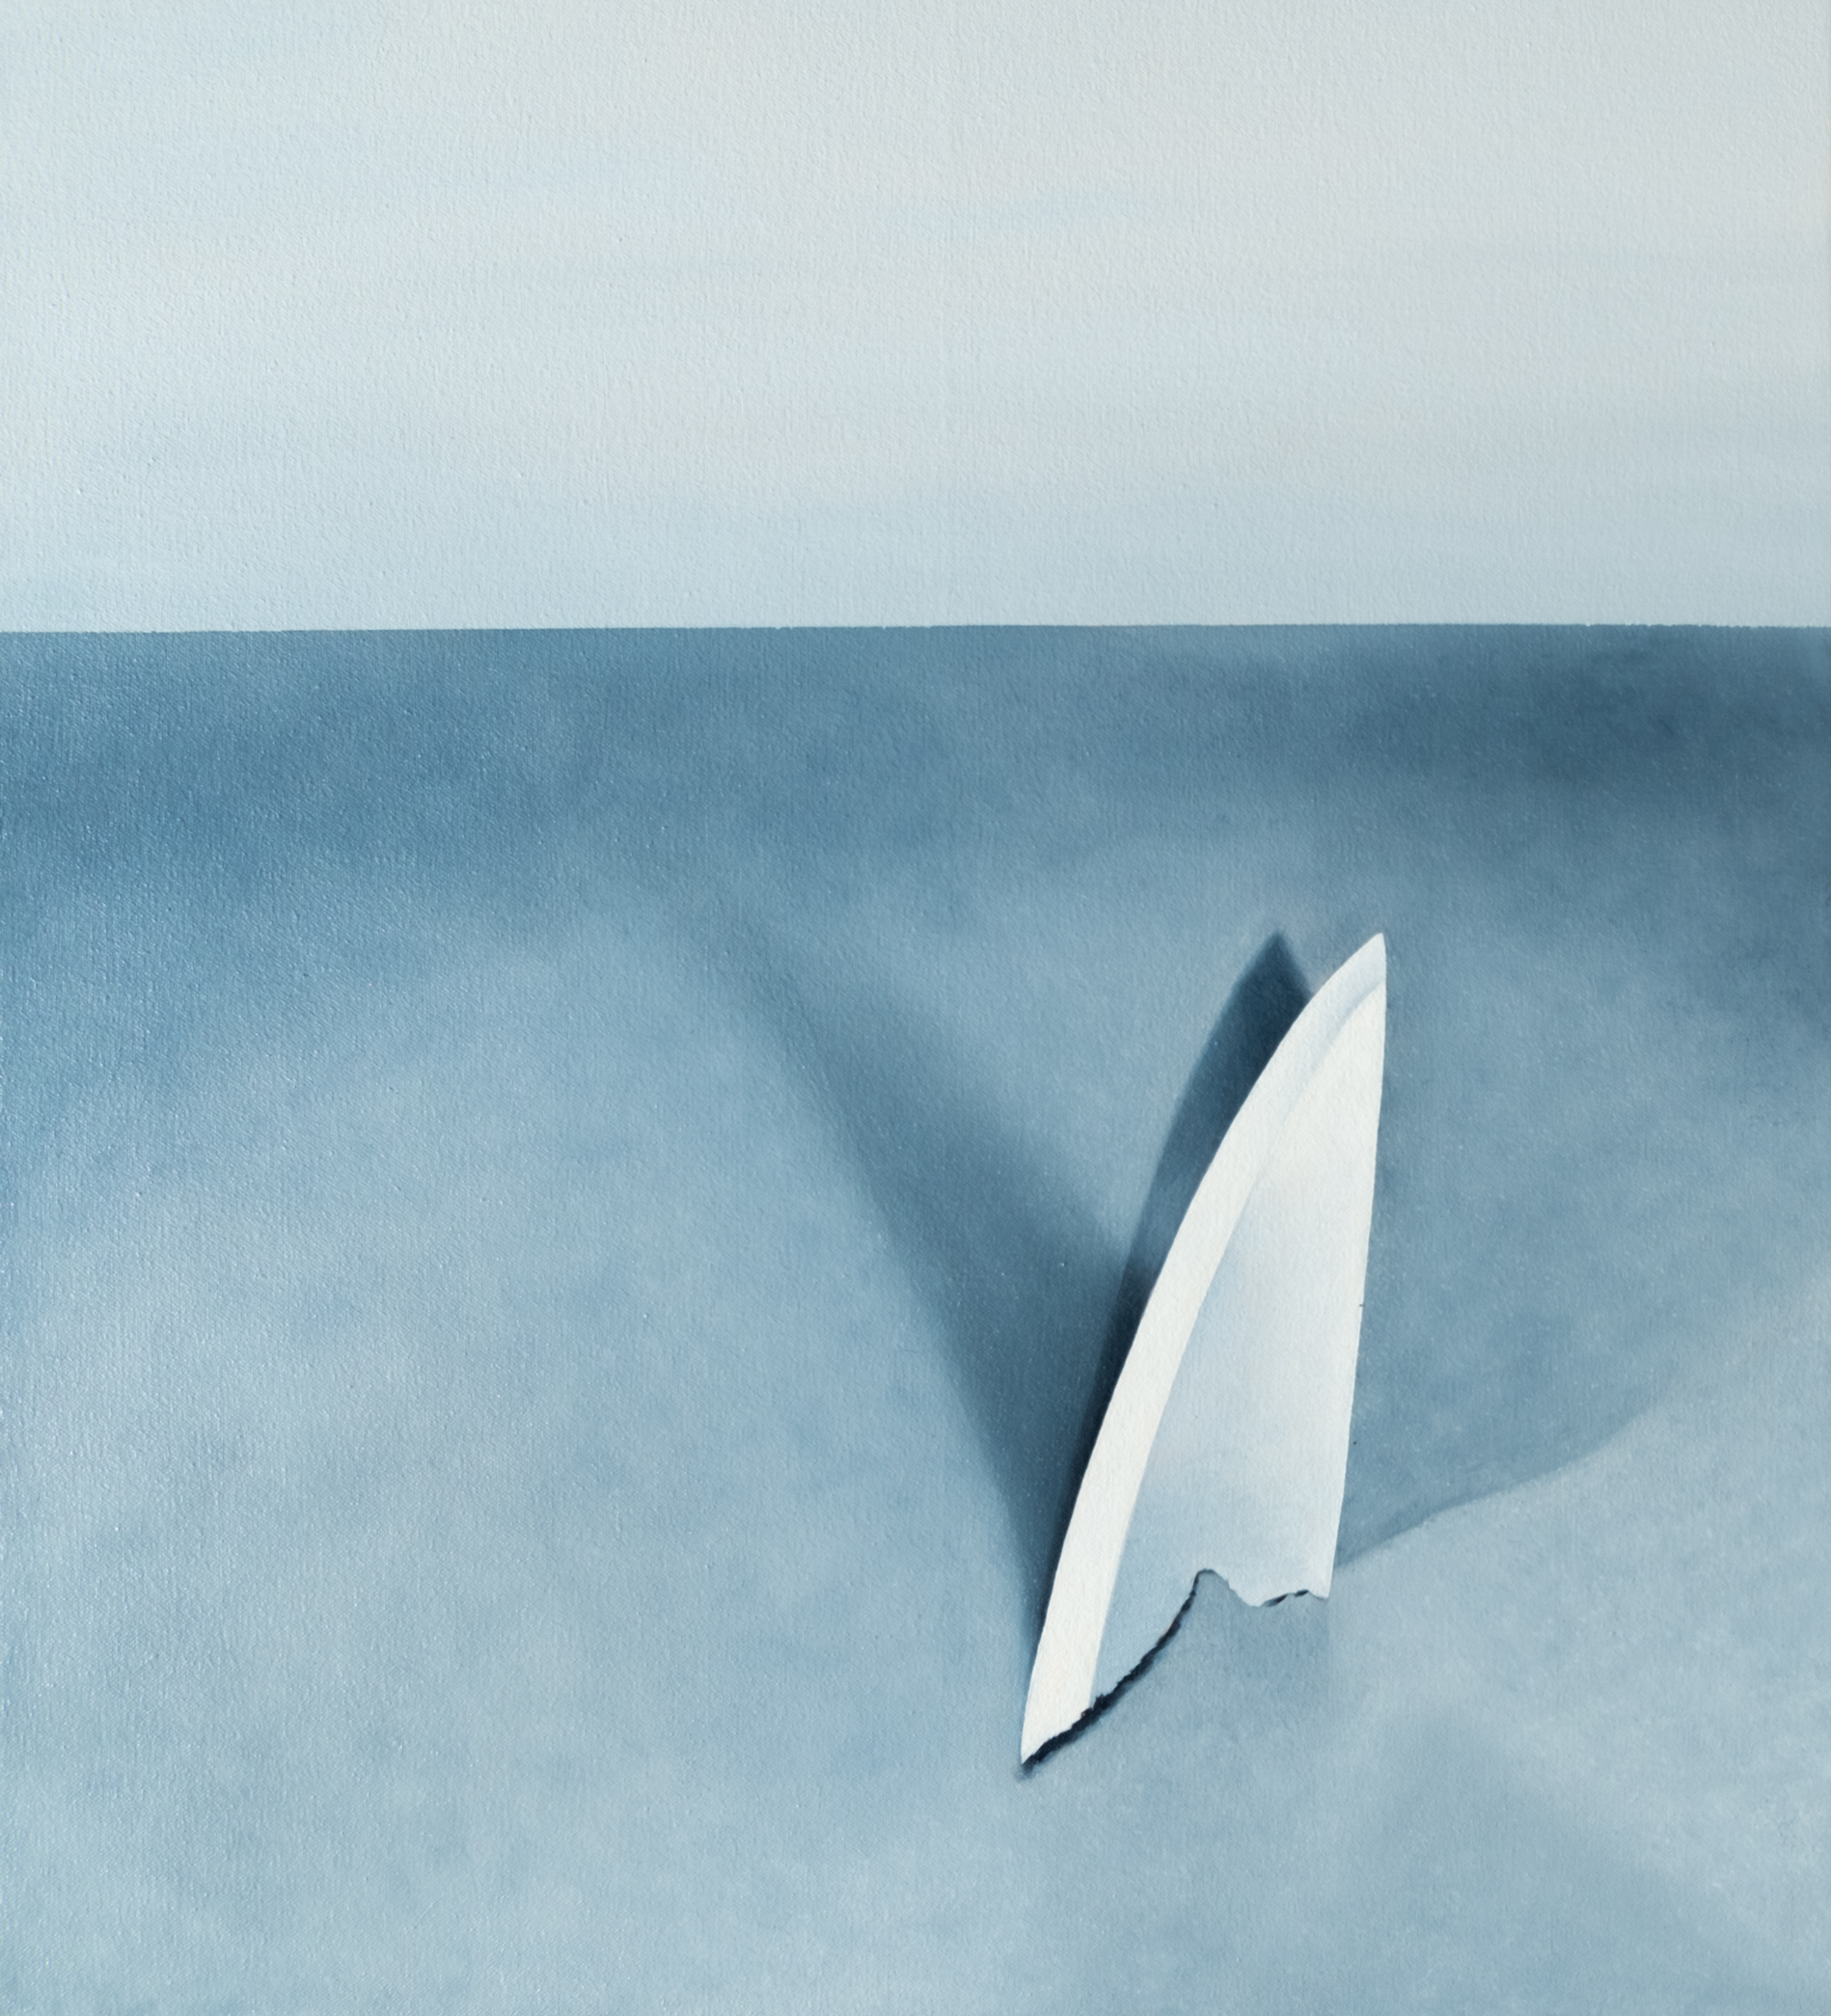   Shark as a Knife  - 2018, Oil on canvas, 20”x22” 